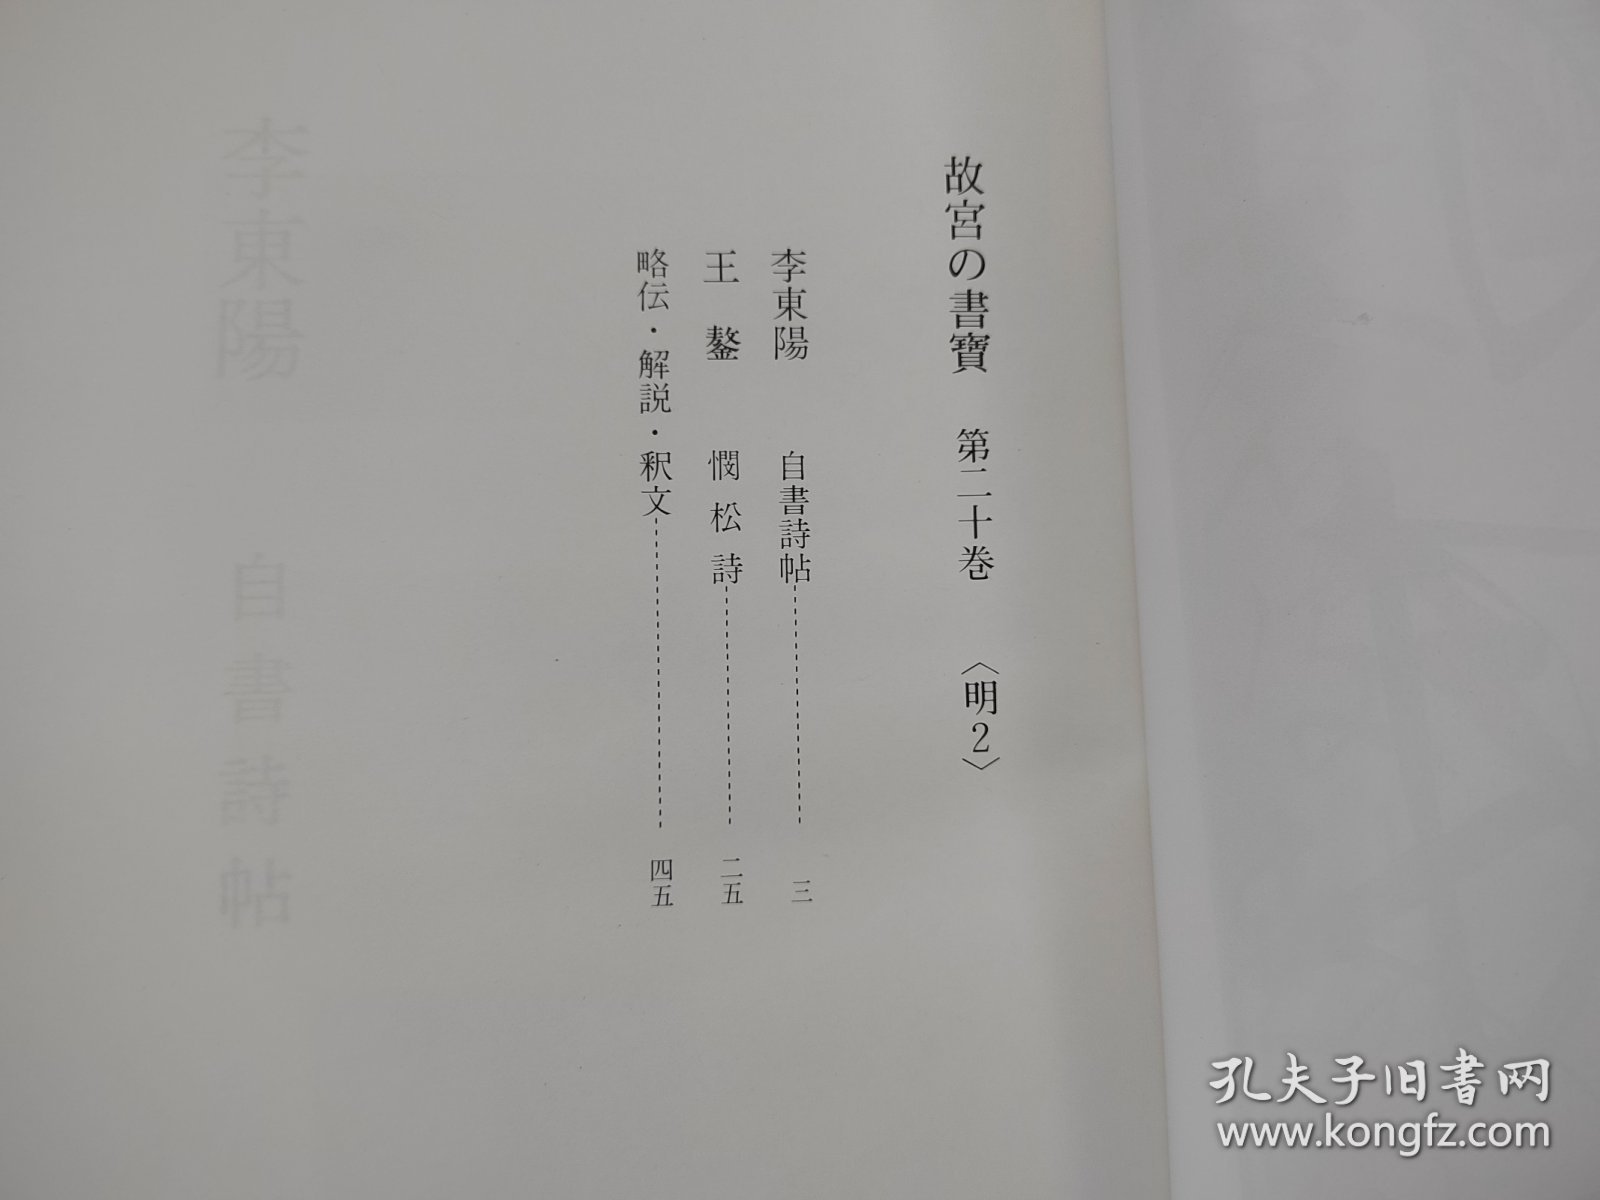 日本原版 8开《故宫的书宝 李东阳 王鏊》   国立故宫博物院